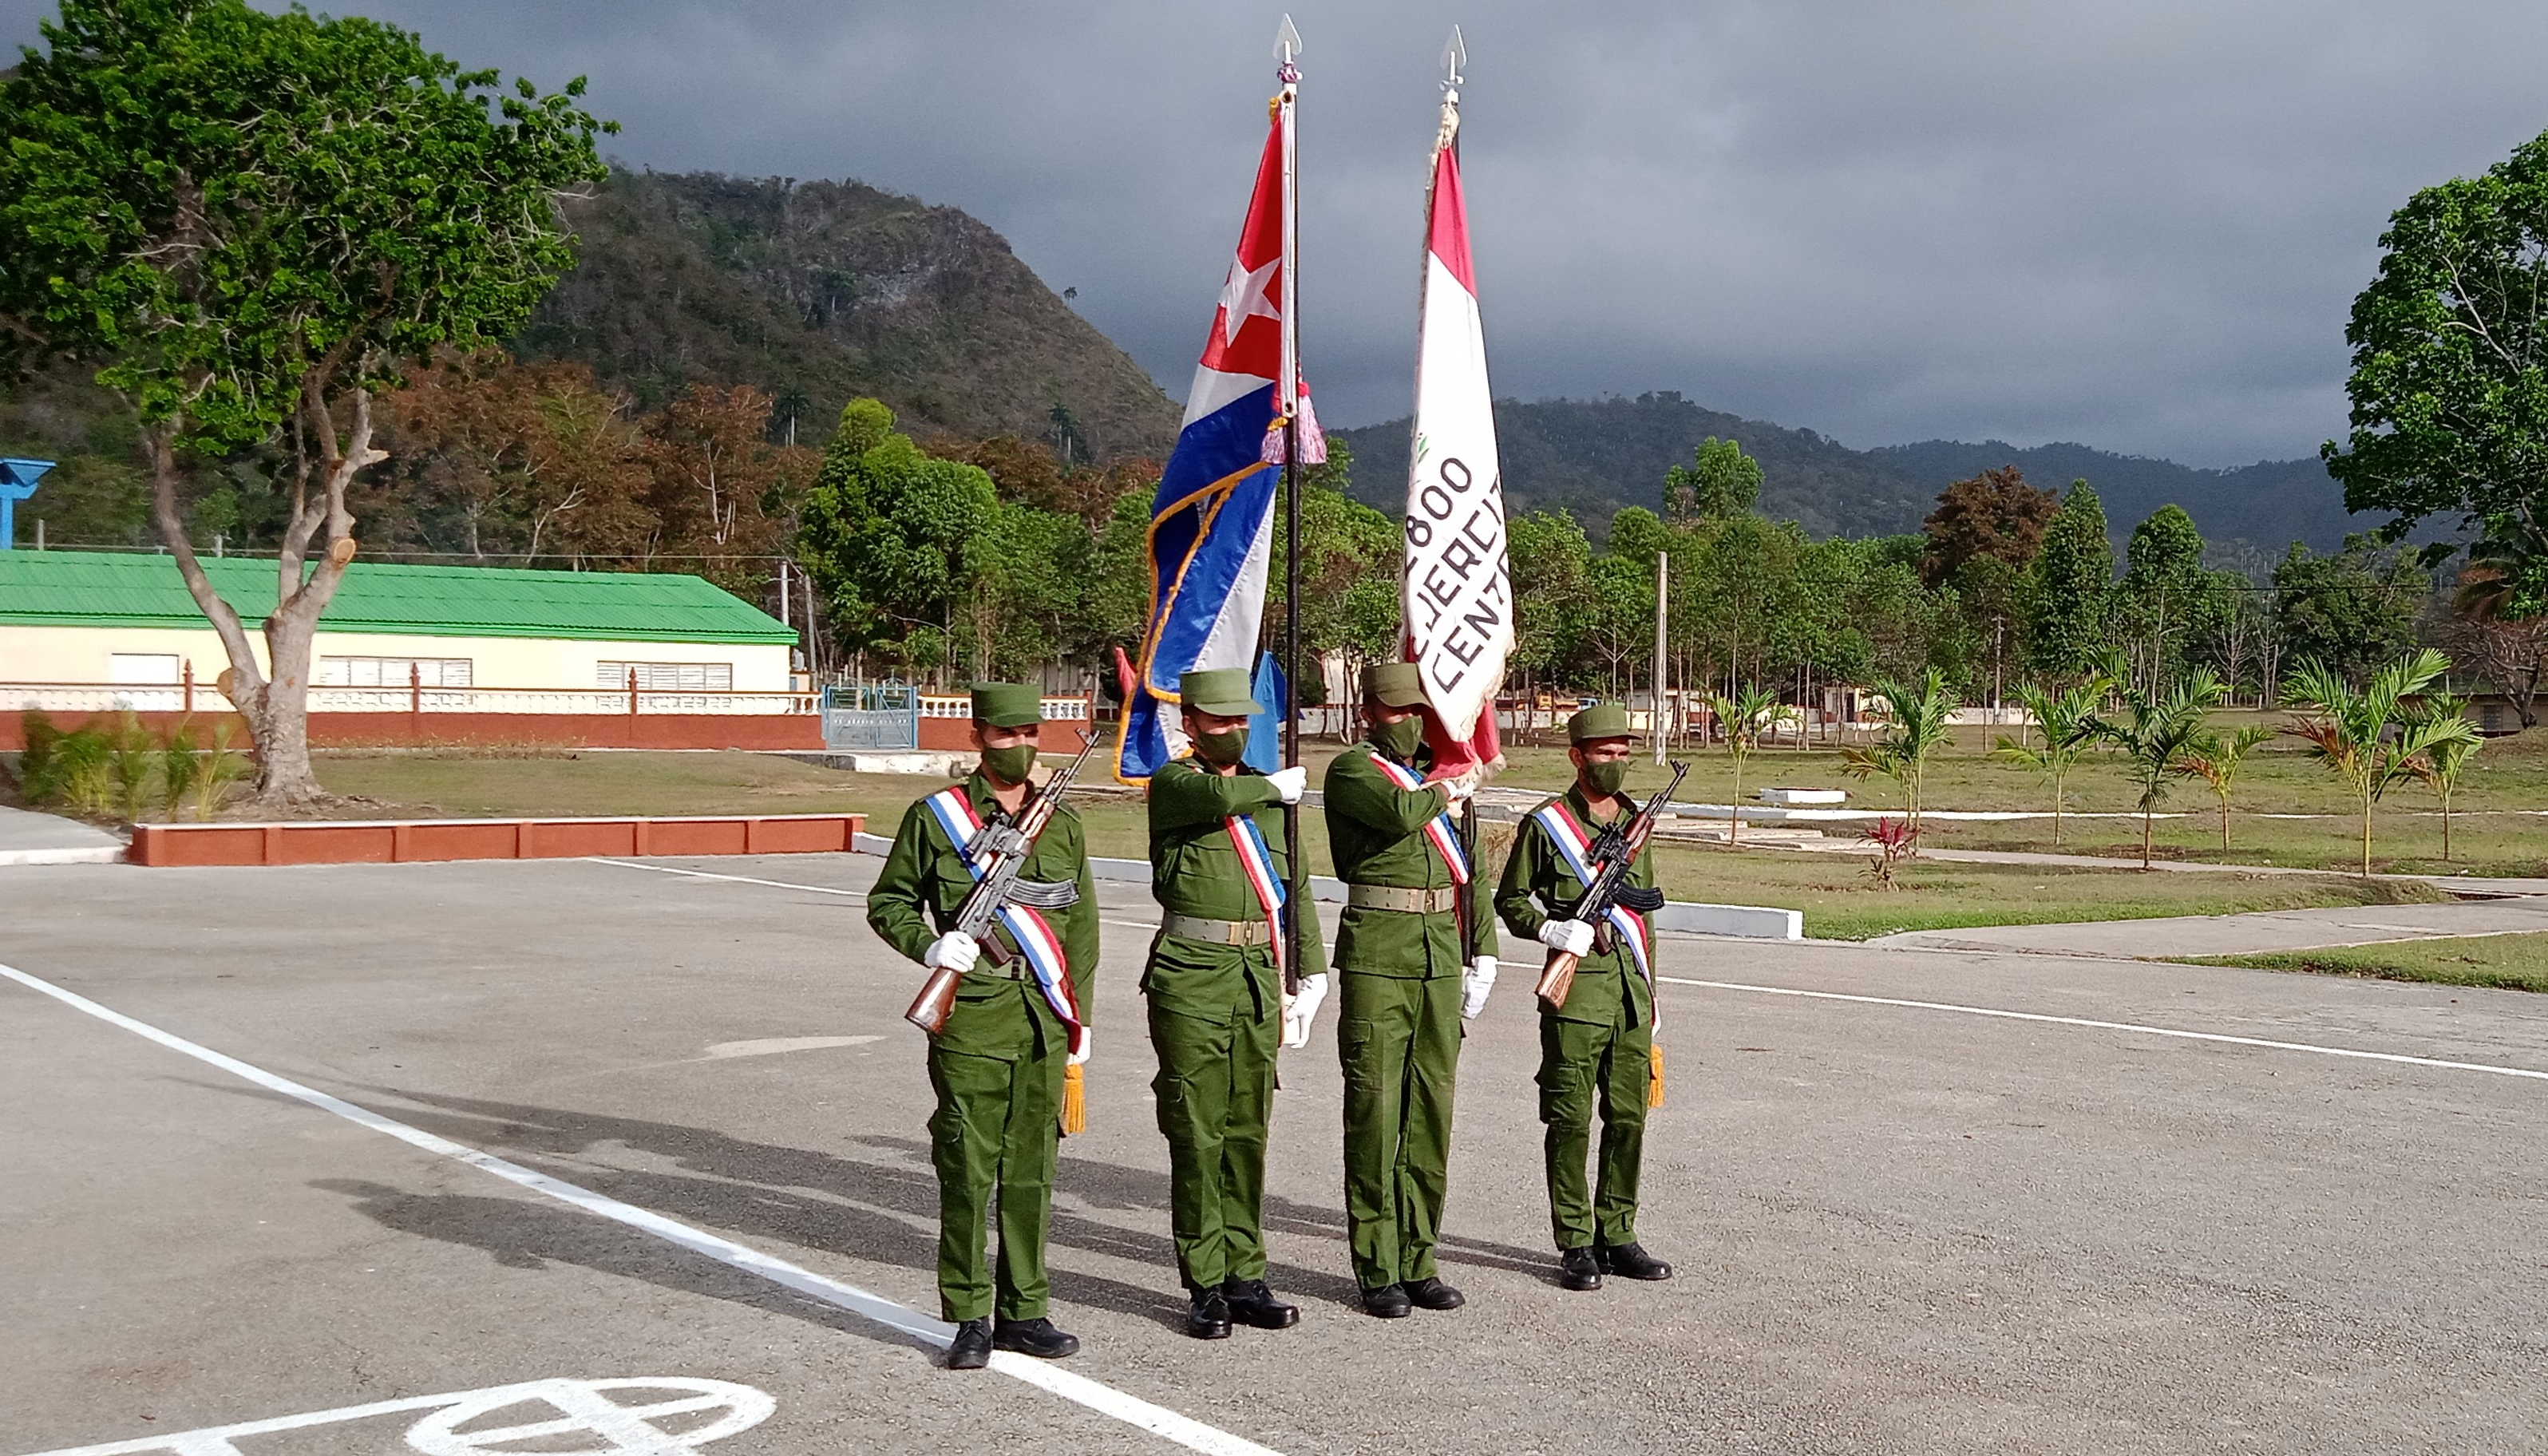 Celebran en territorio espirituano aniversario 61 del Ejército central. Foto: Radio Rebelde